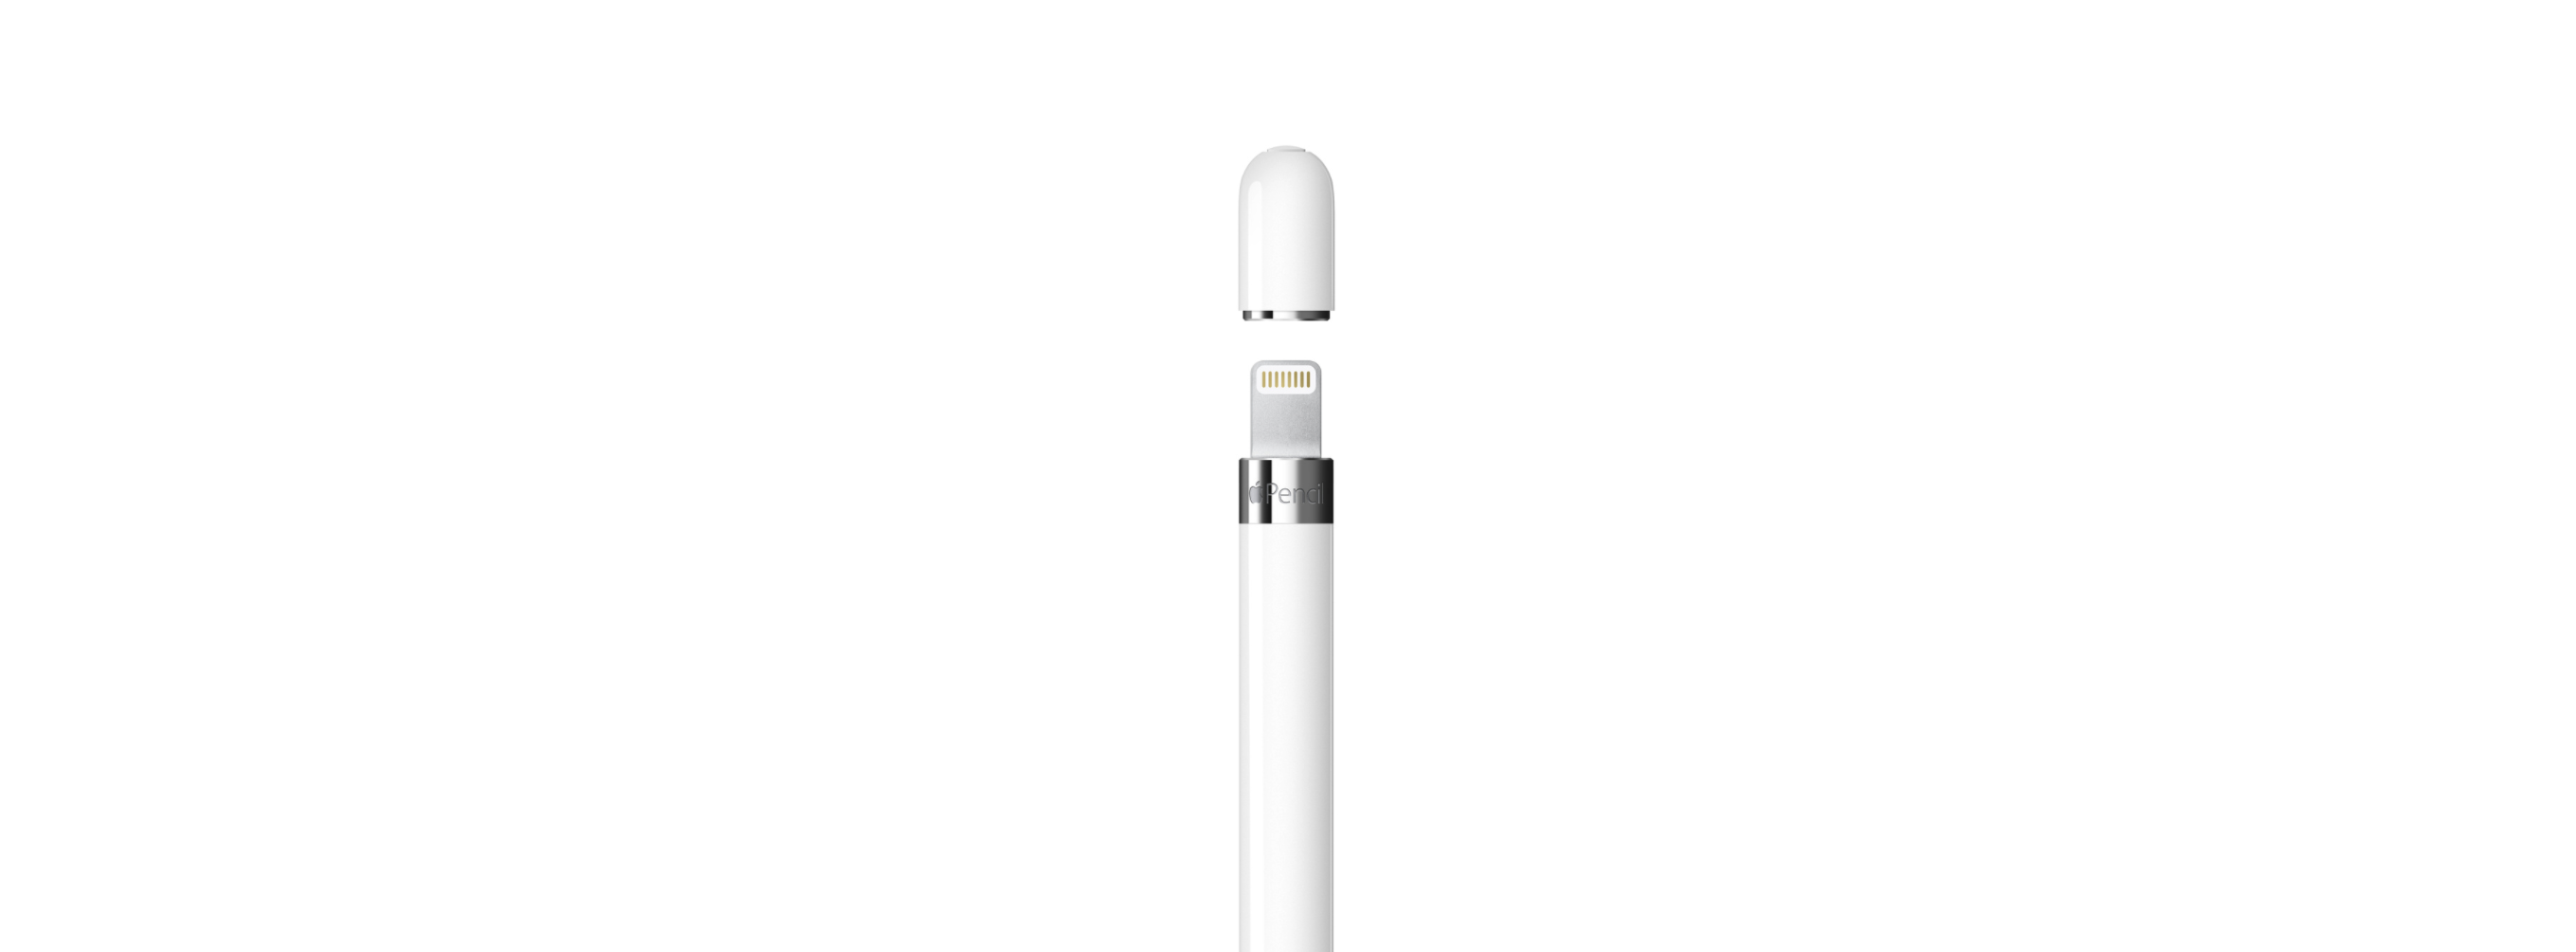 苹果ipad手写笔applepencil一代和二代的7个区别及applepencil平替款